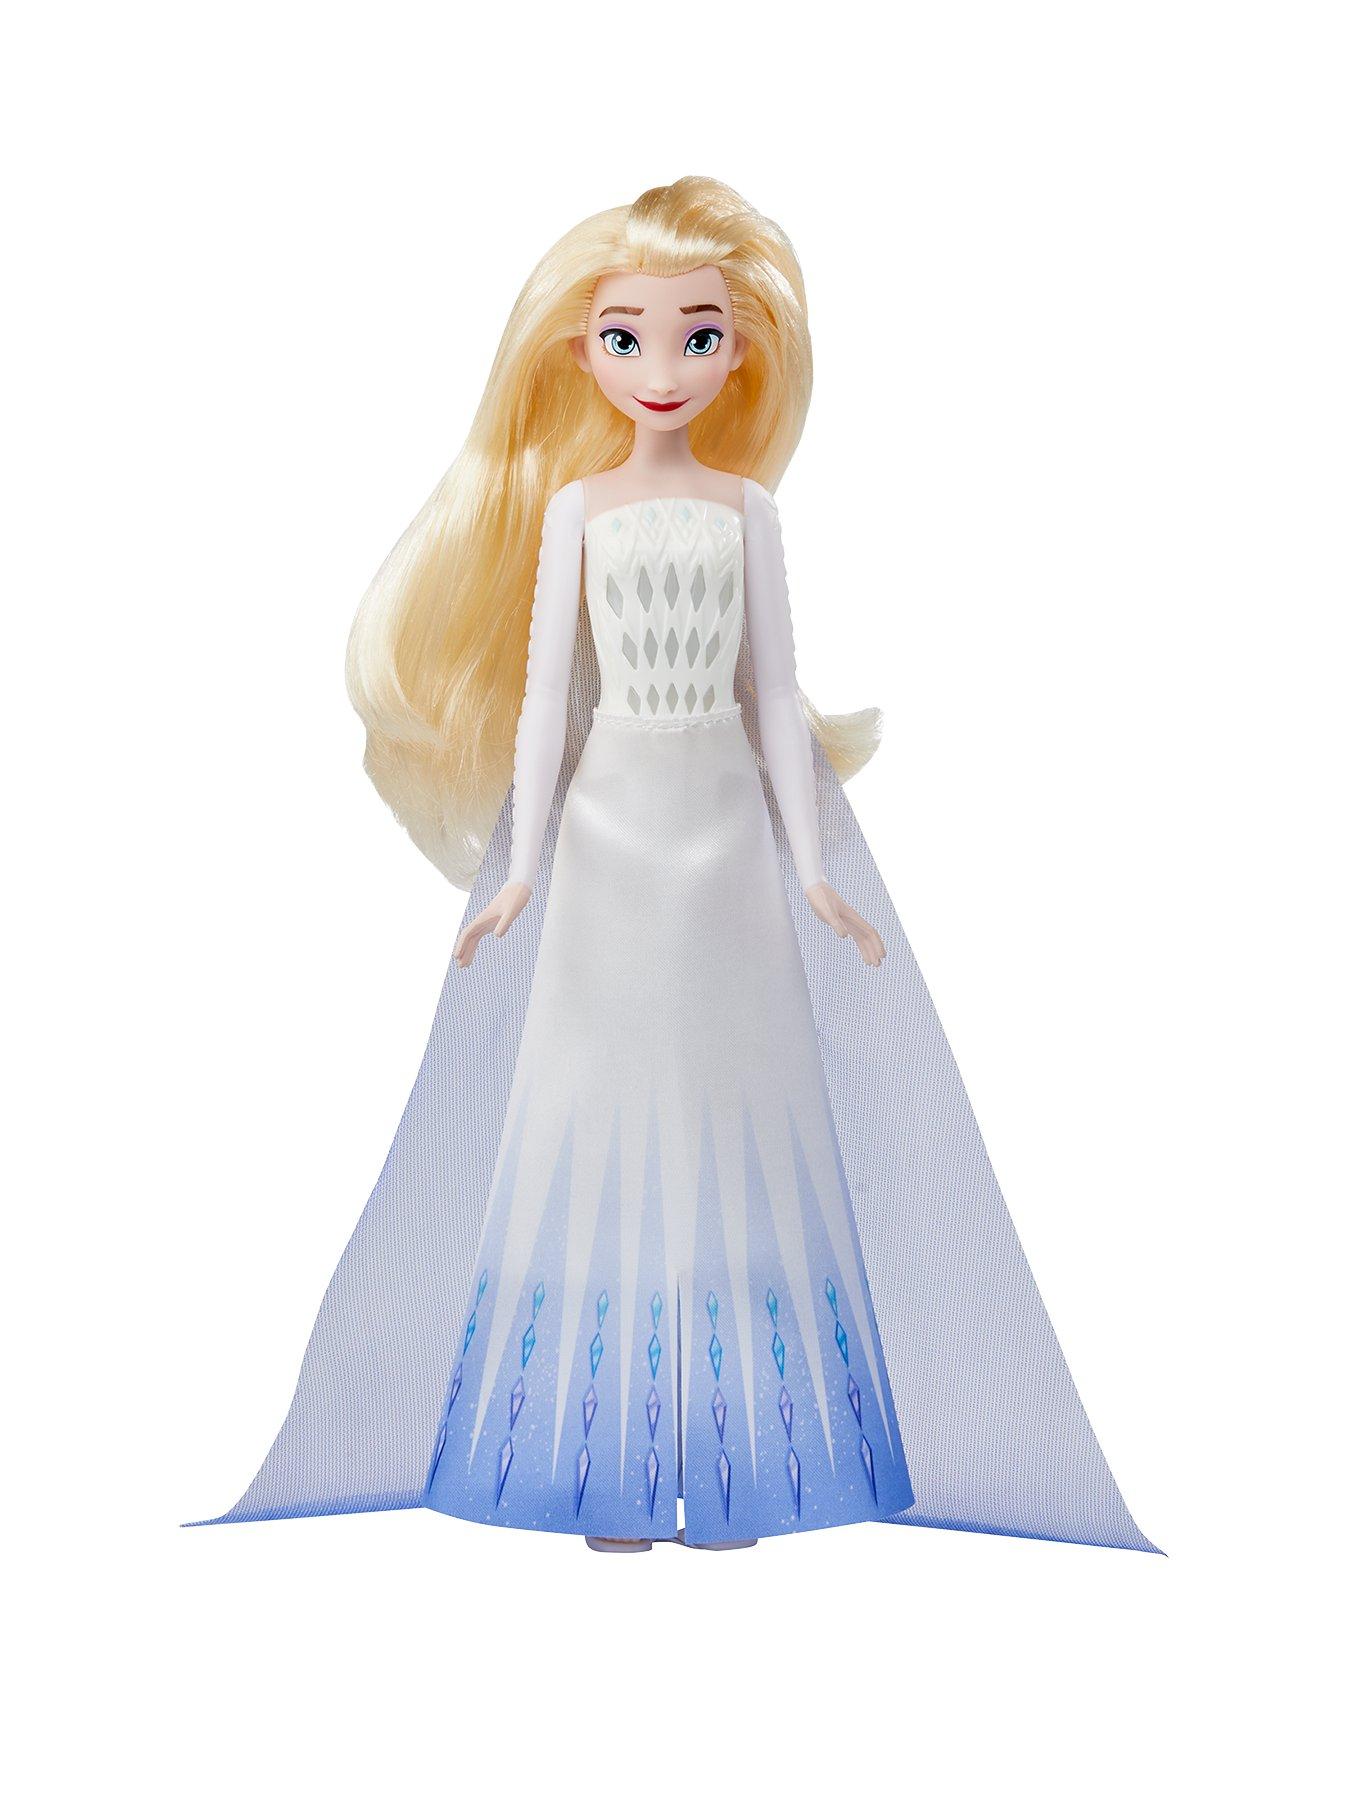 Details about   Disney Frozen Elsa Doll. 